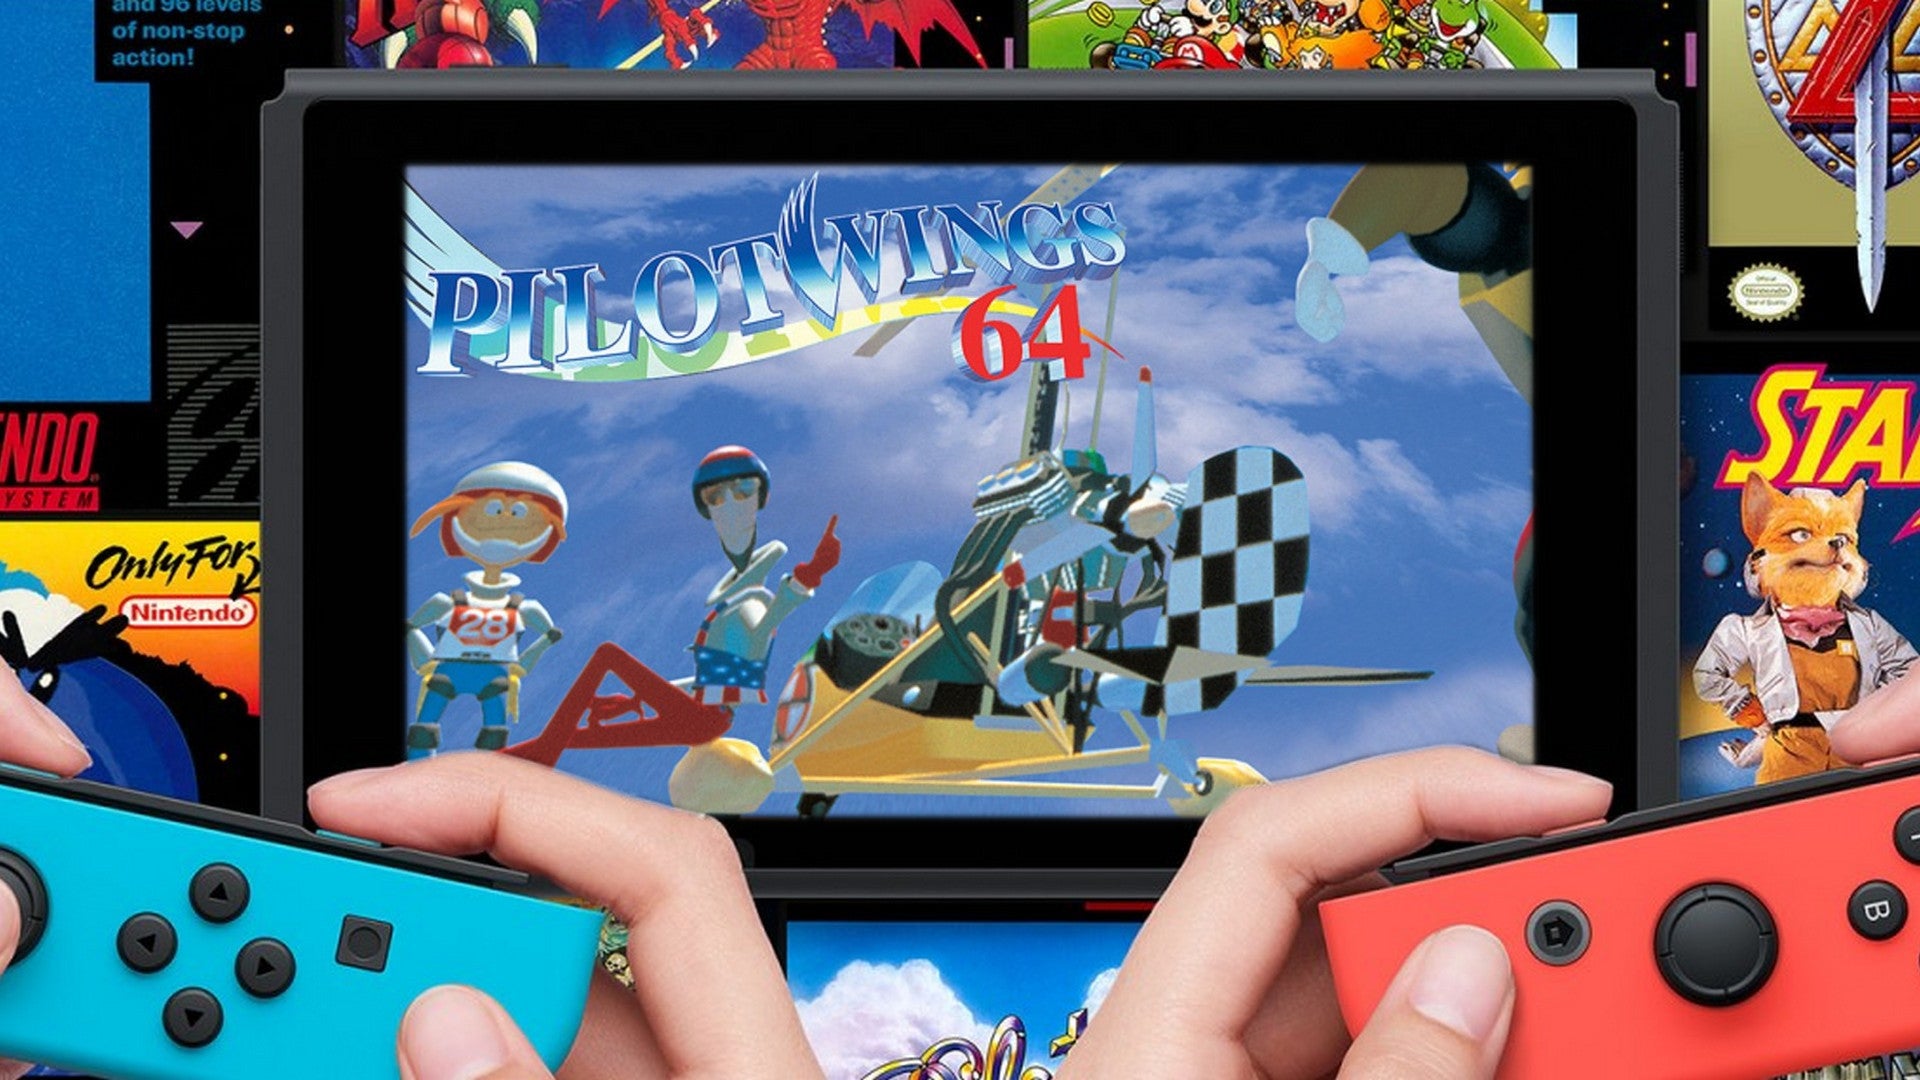 Pilotwings 64 erscheint für Nintendo Switch Online.